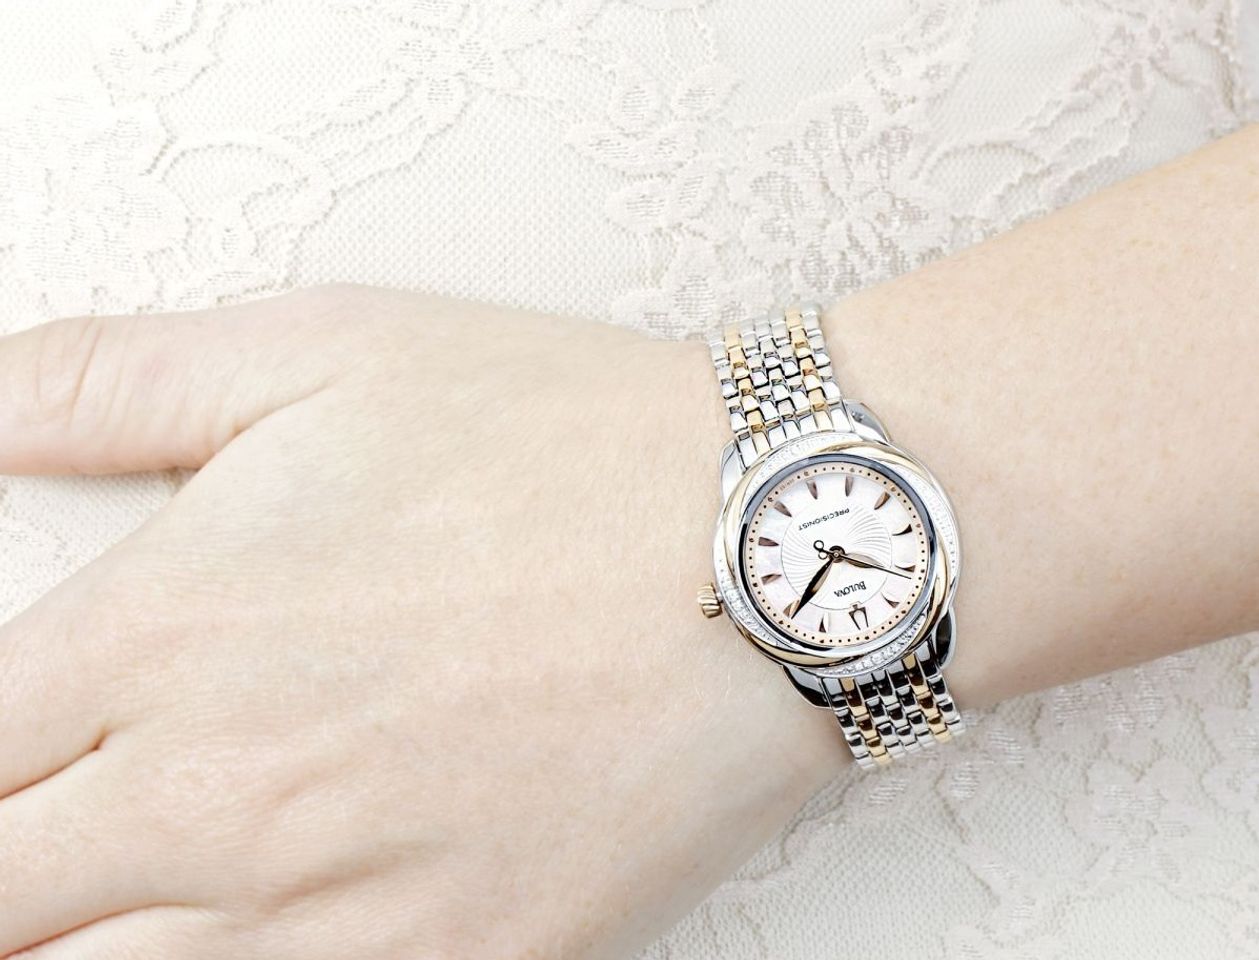 Chiếc đồng hồ Bulova nữ 98R153 trên tay sang trọng